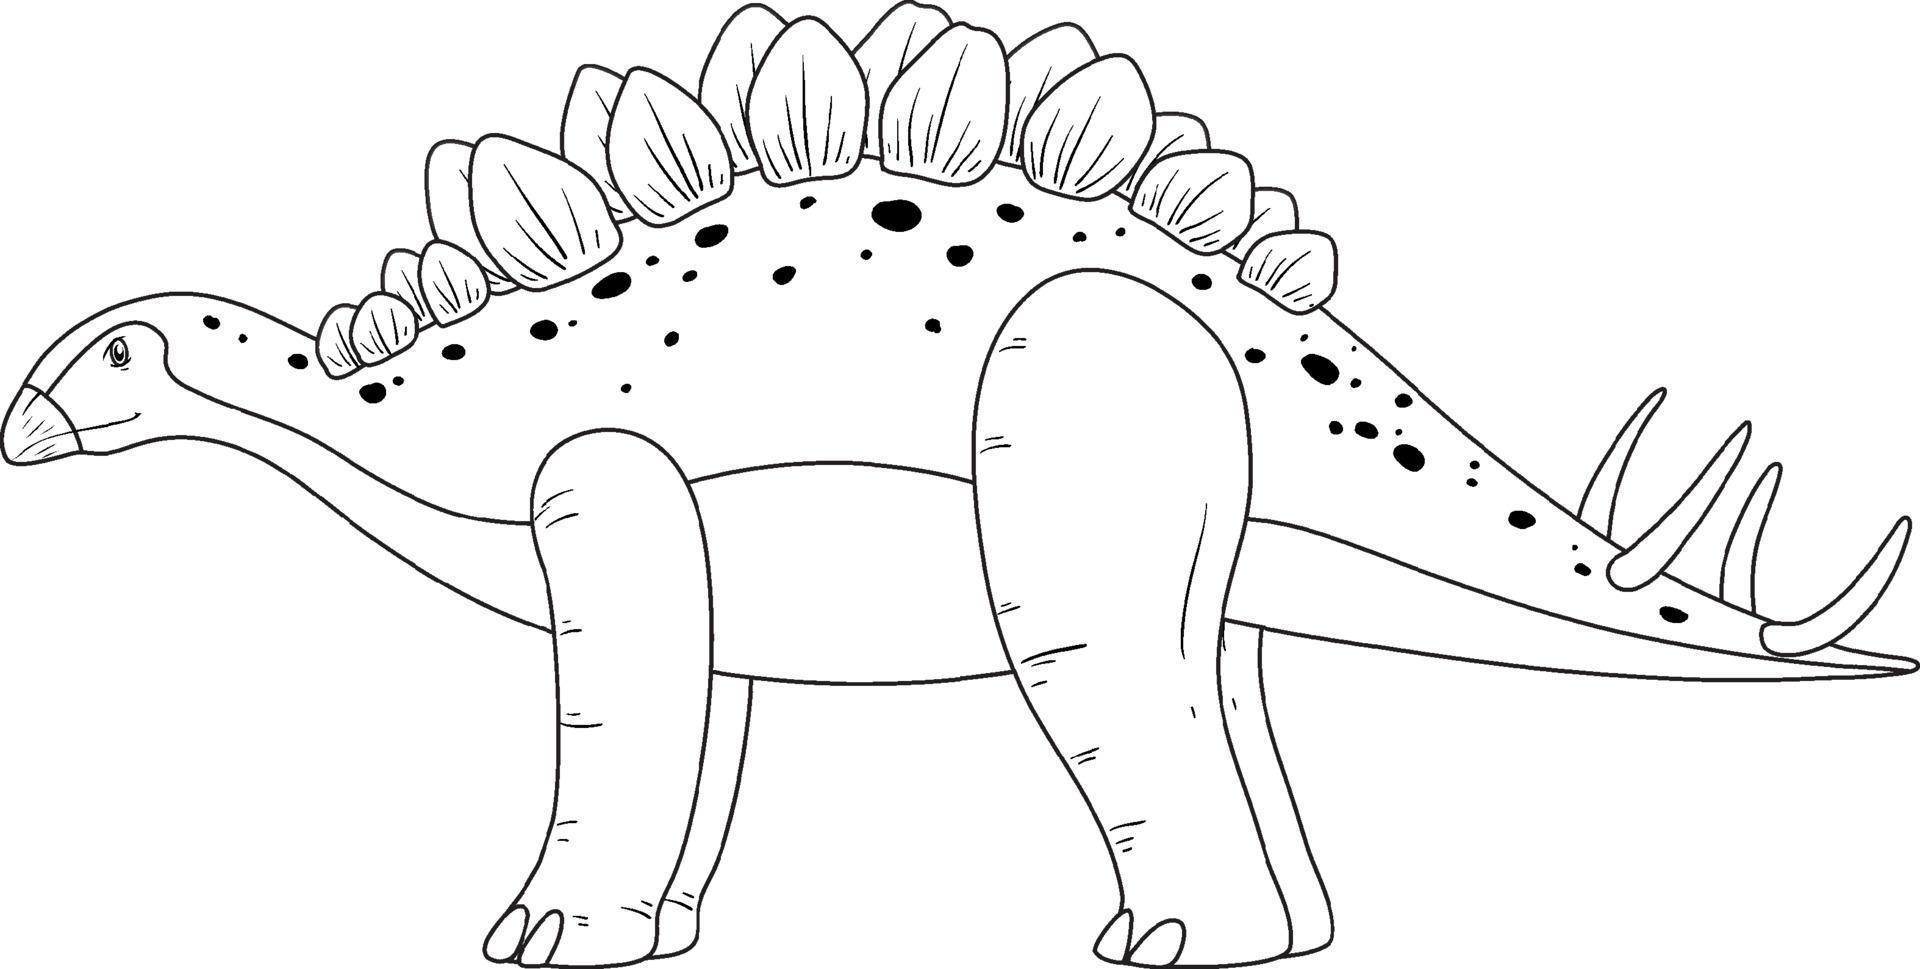 contorno de doodle de dinossauro estegossauro no fundo branco vetor